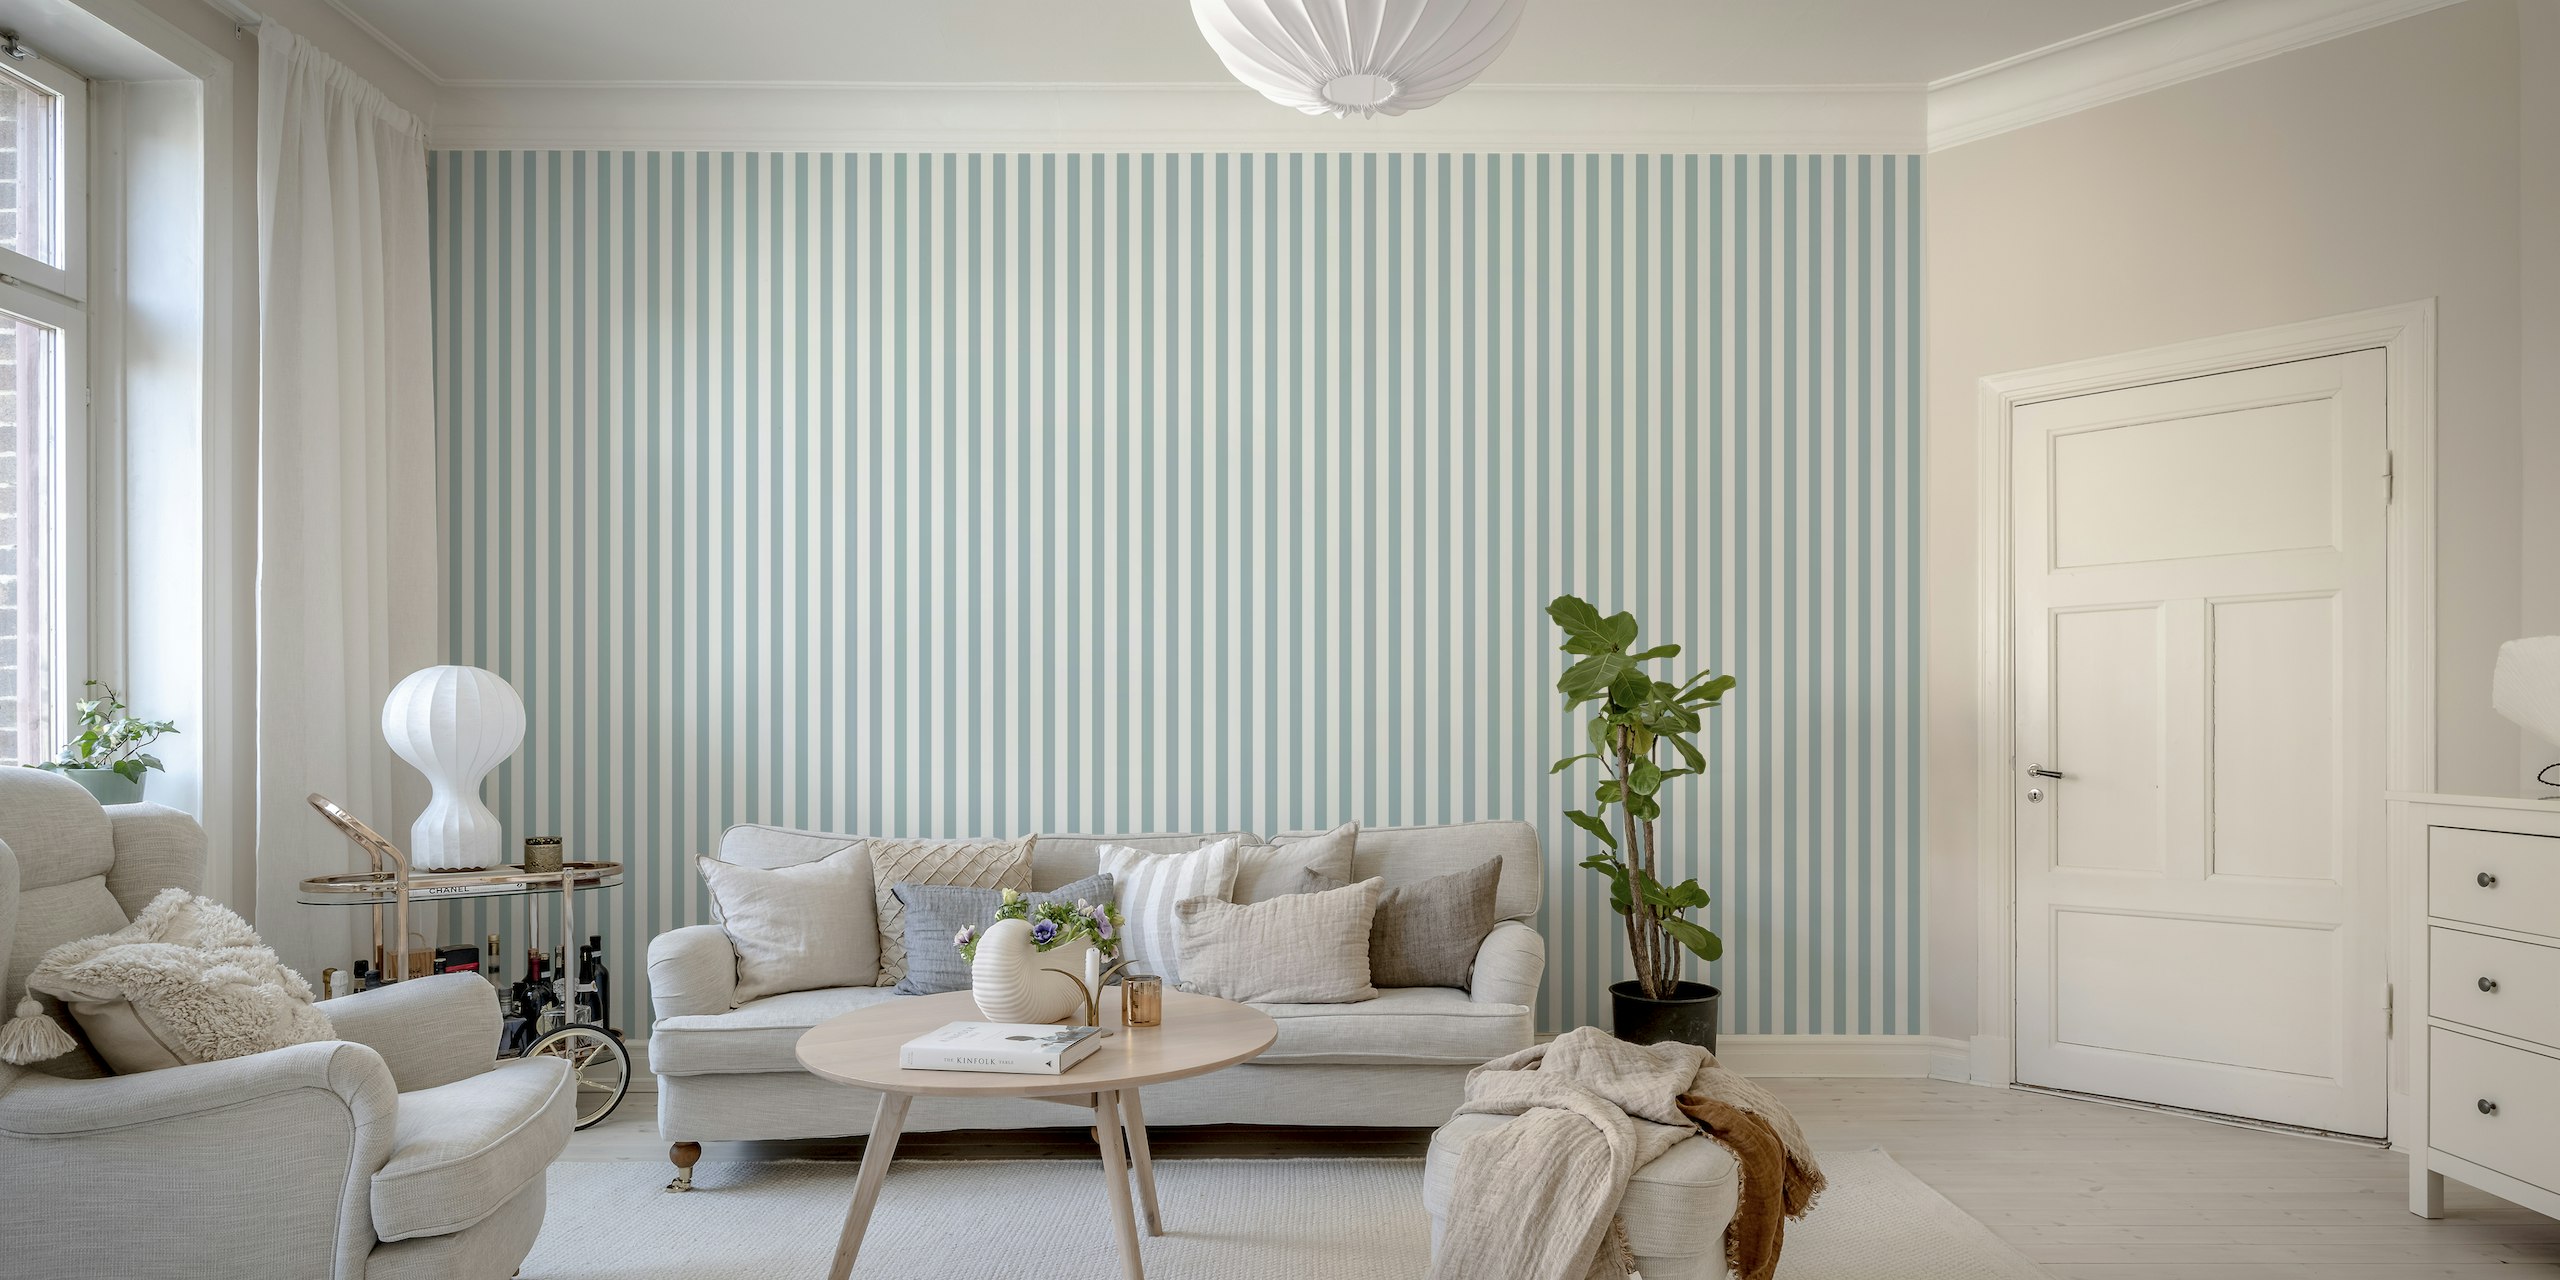 Scandi Stripes - Modrá nástěnná malba s klidnými modrými svislými pruhy pro moderní domácí dekoraci